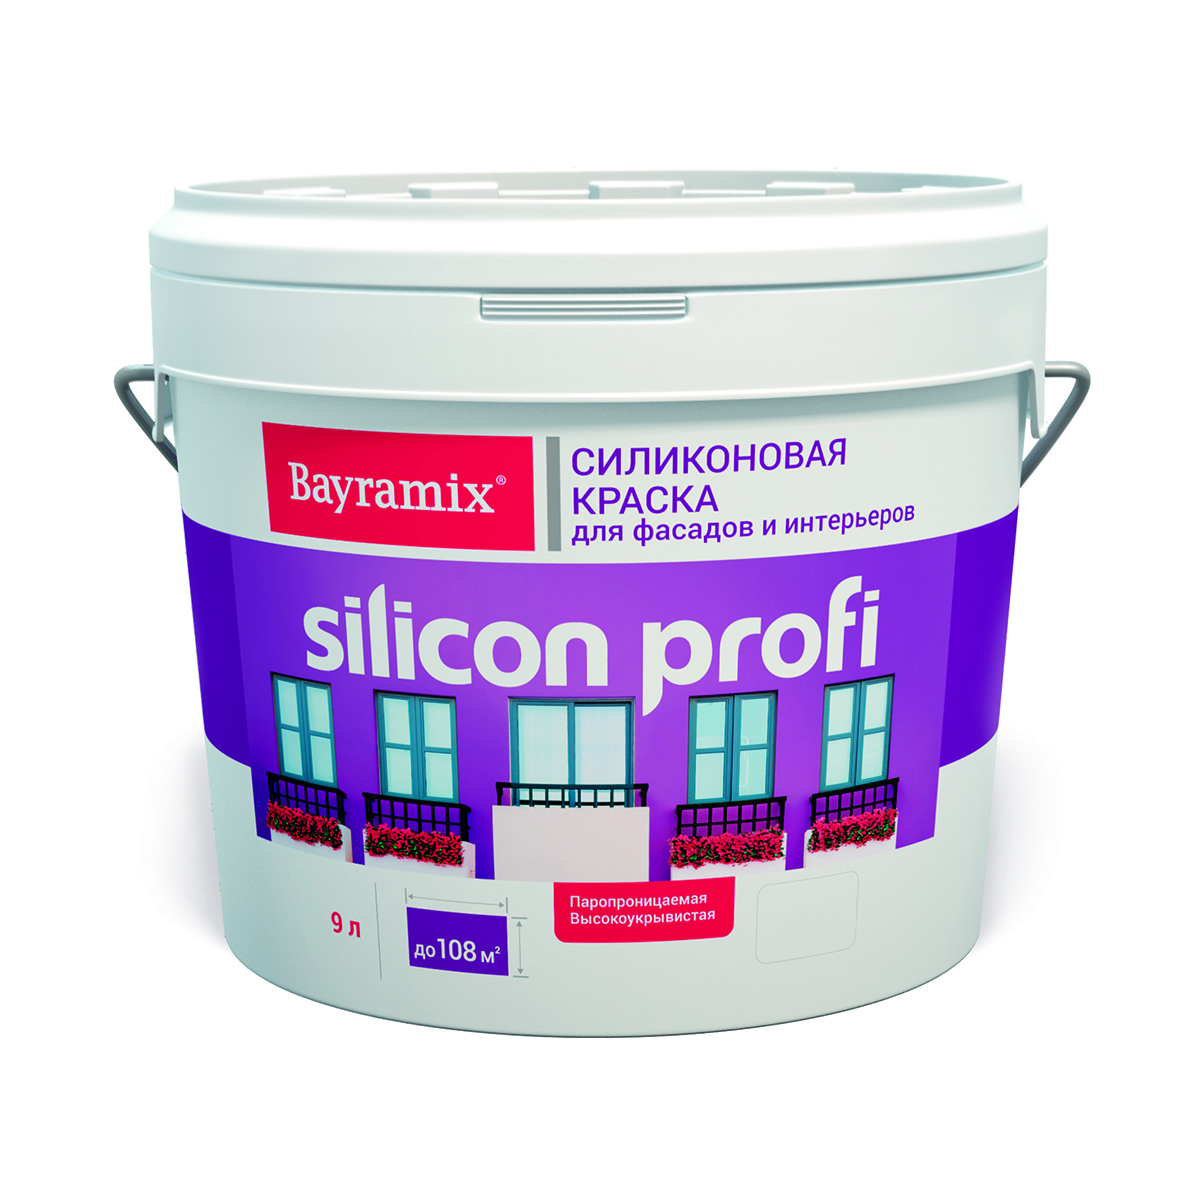 фото Краска для фасадов и интерьеров силиконовая bayramix silicon profi, бесцветная, 9 л